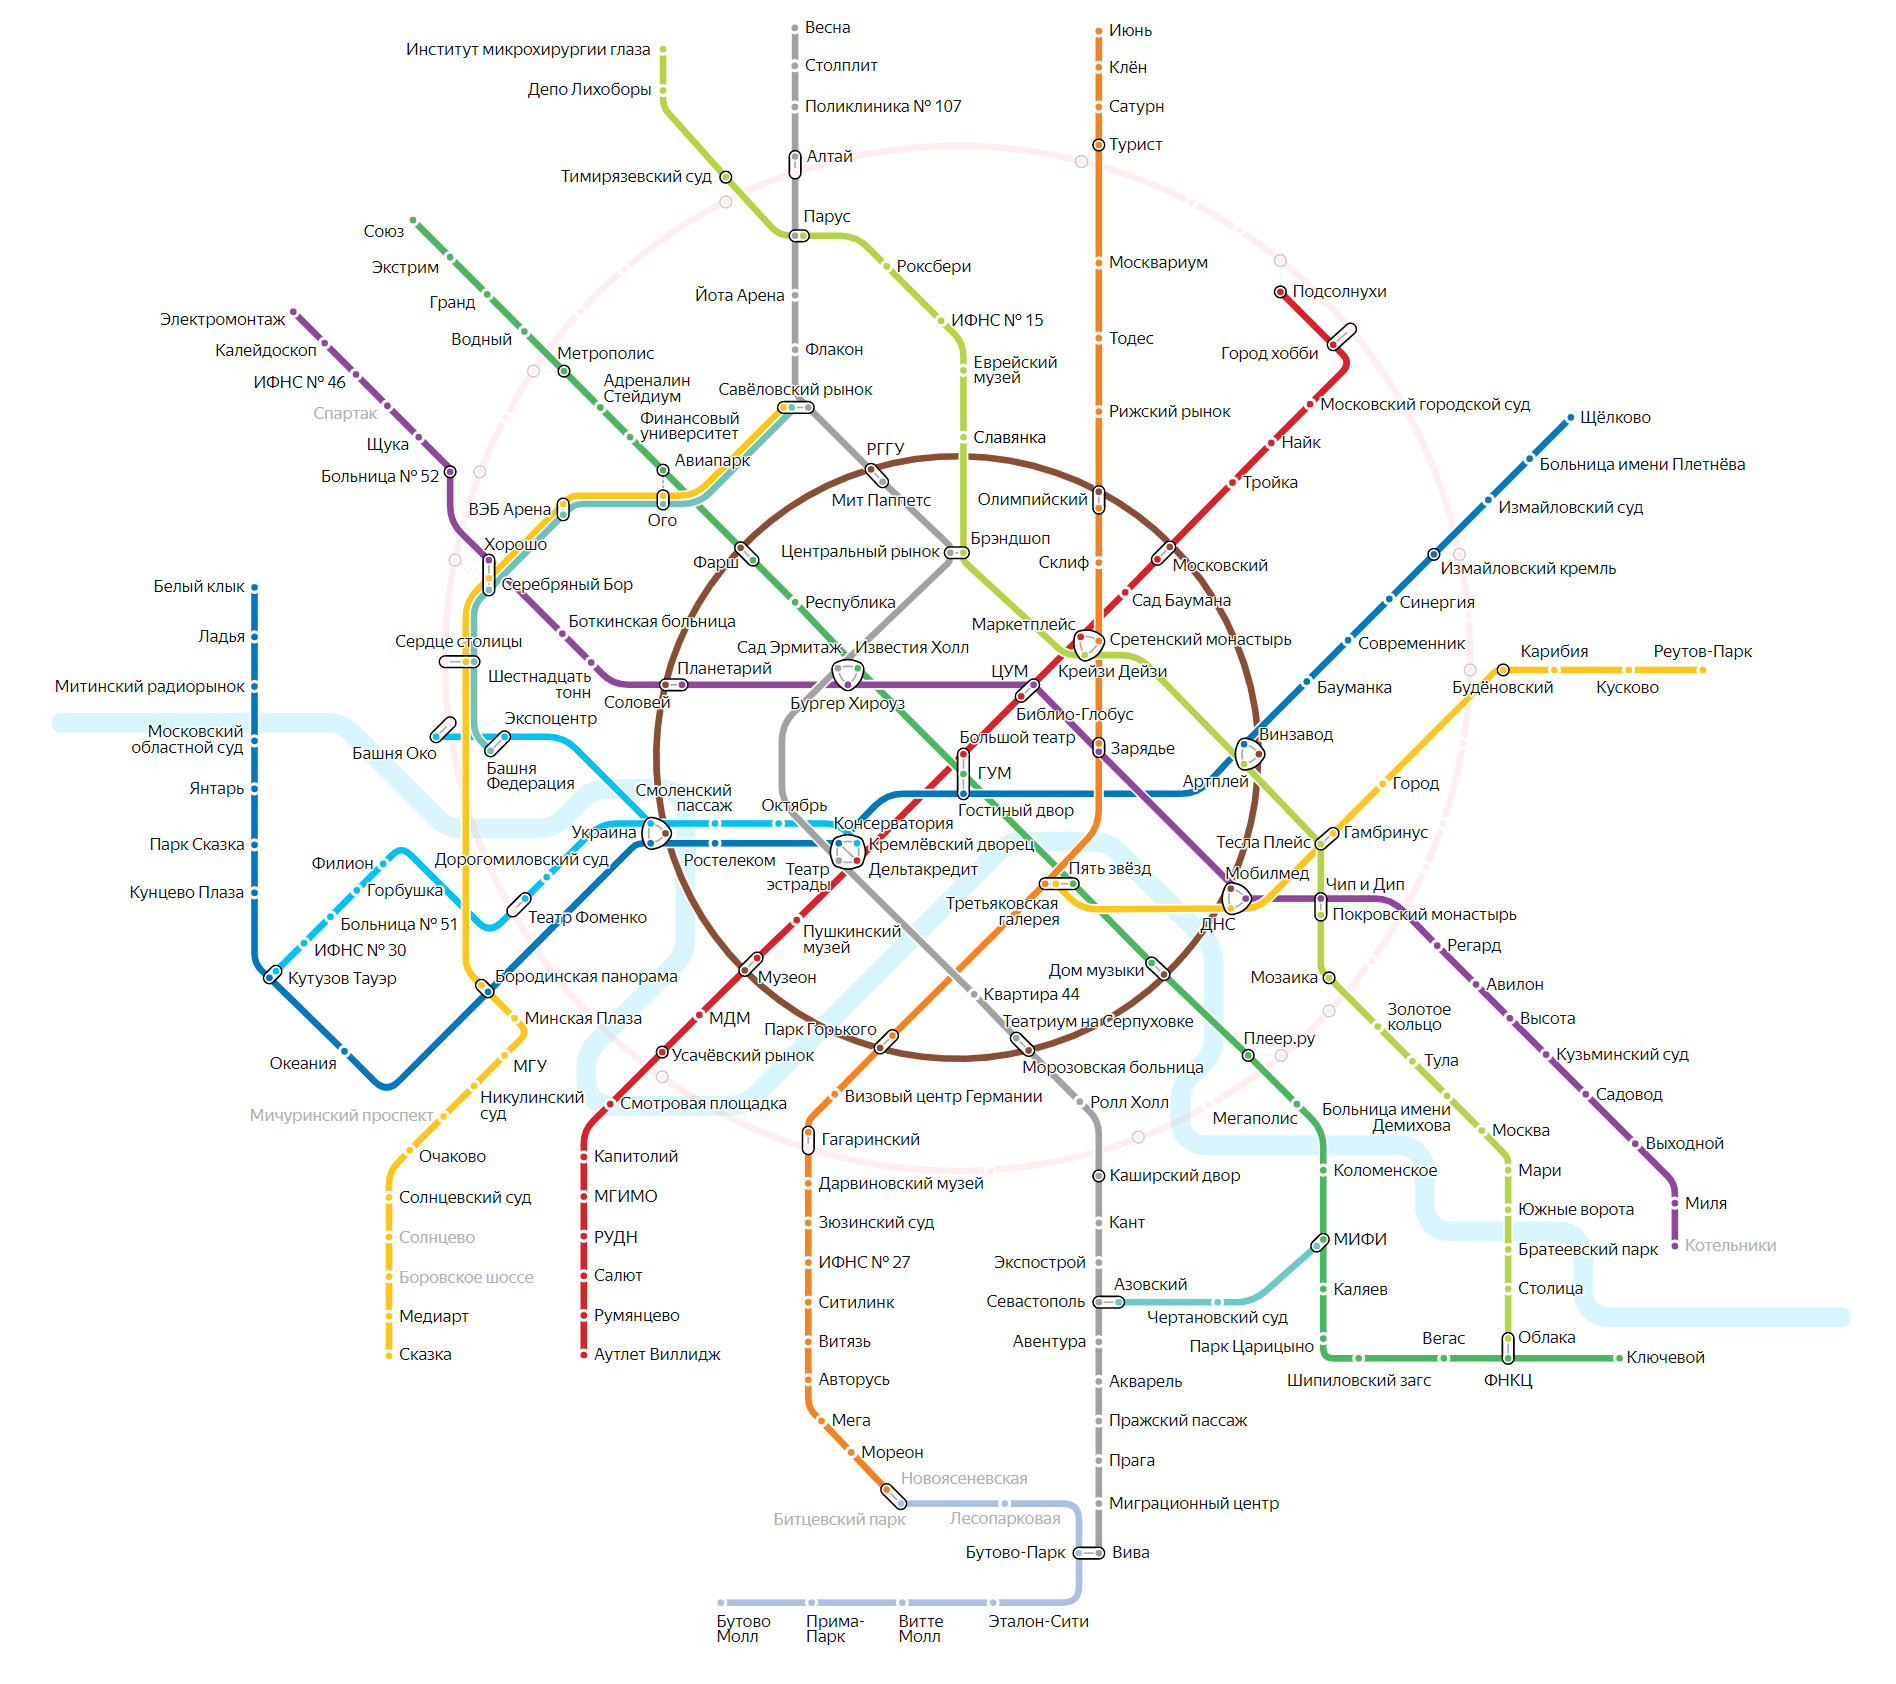 карта метро москвы 2020 года с новыми станциями на карте скачать